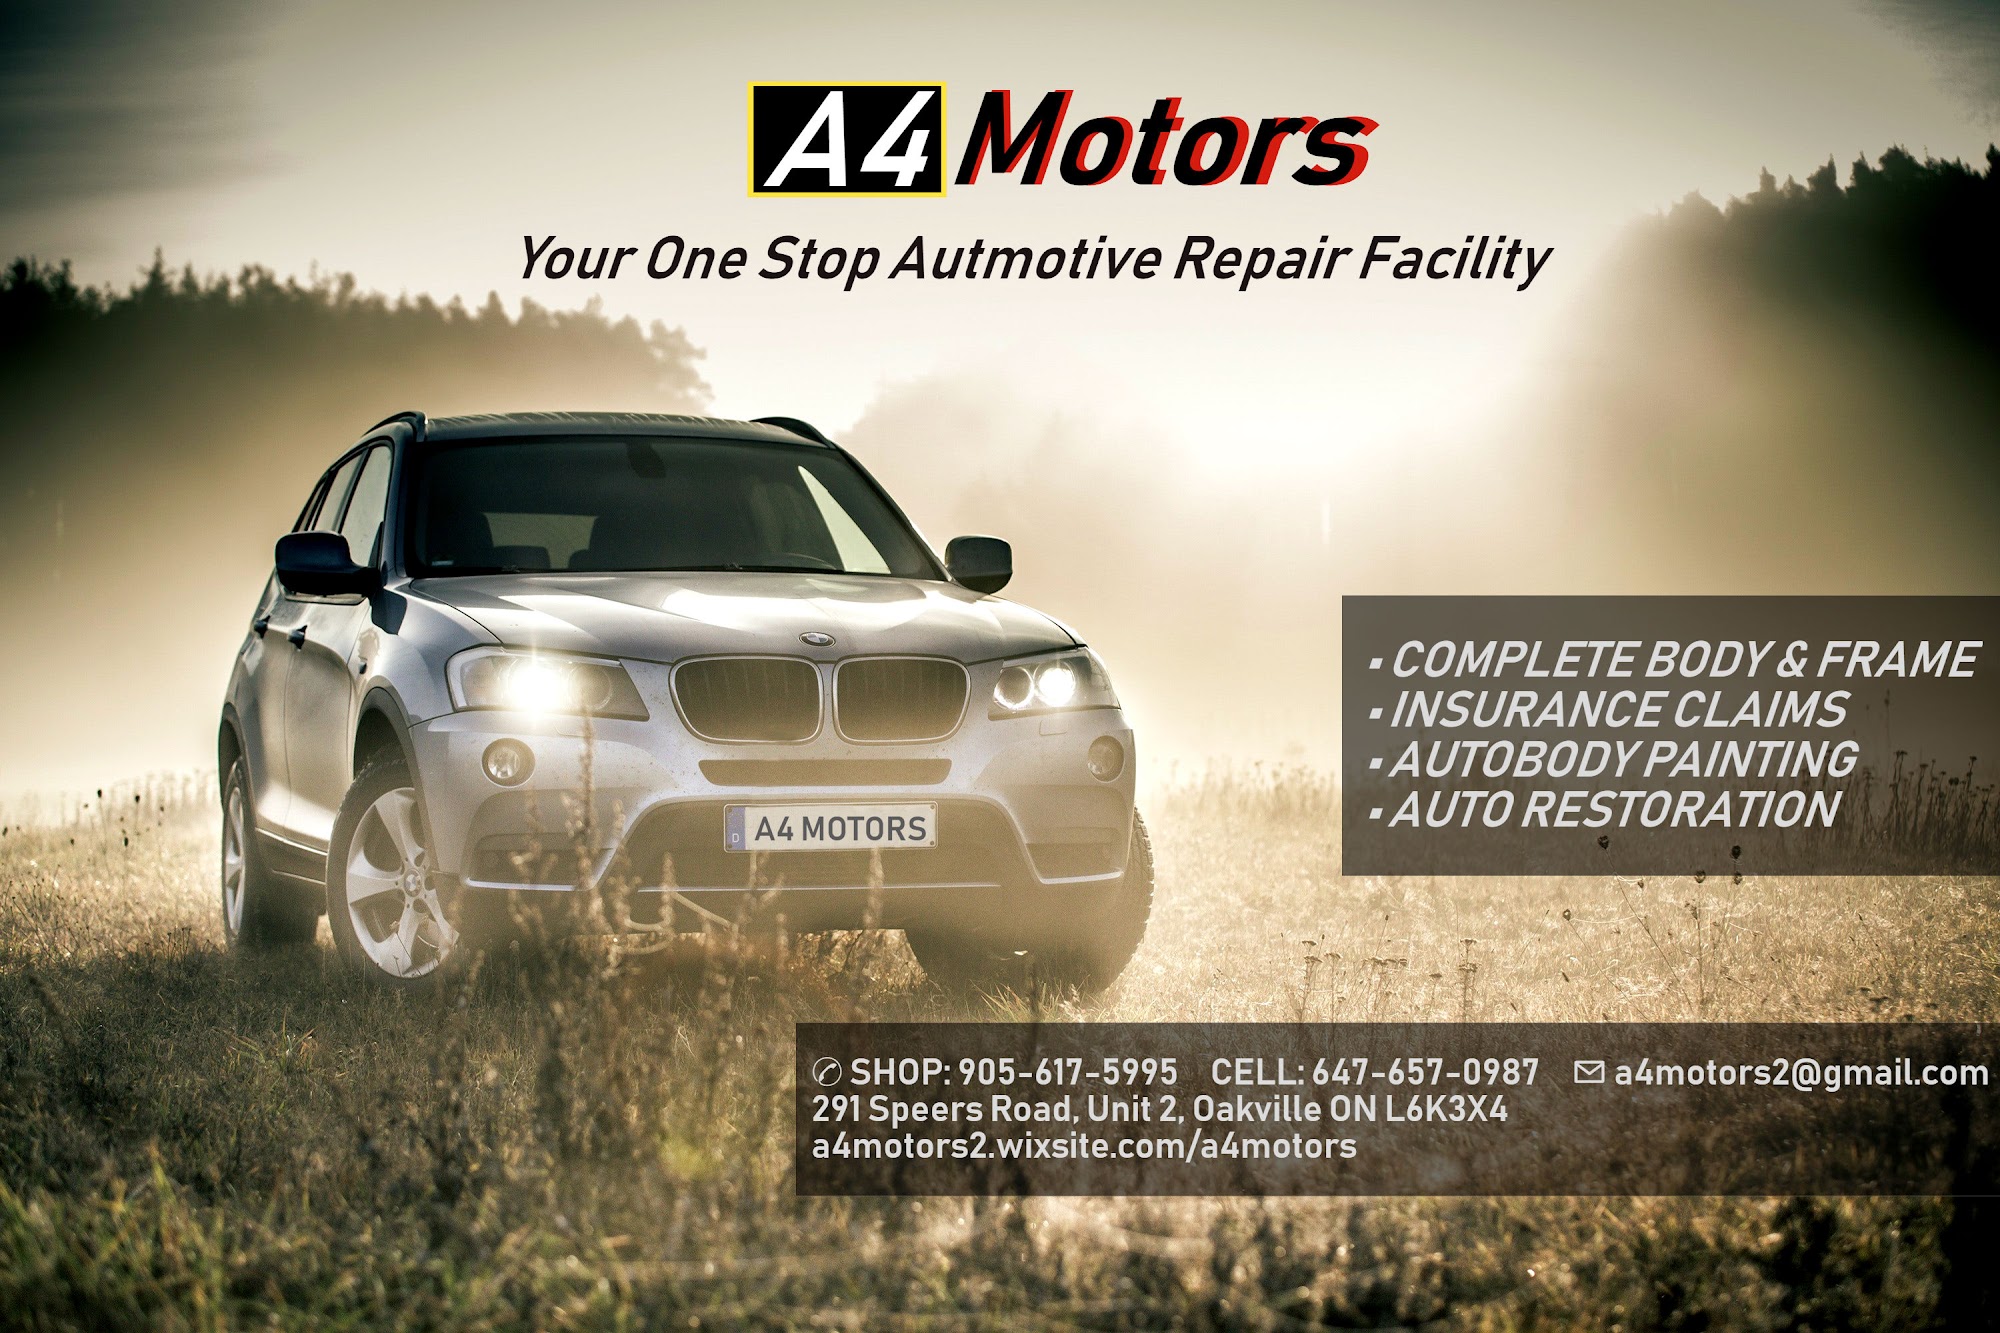 A4 Motors Auto Body Repair Shop